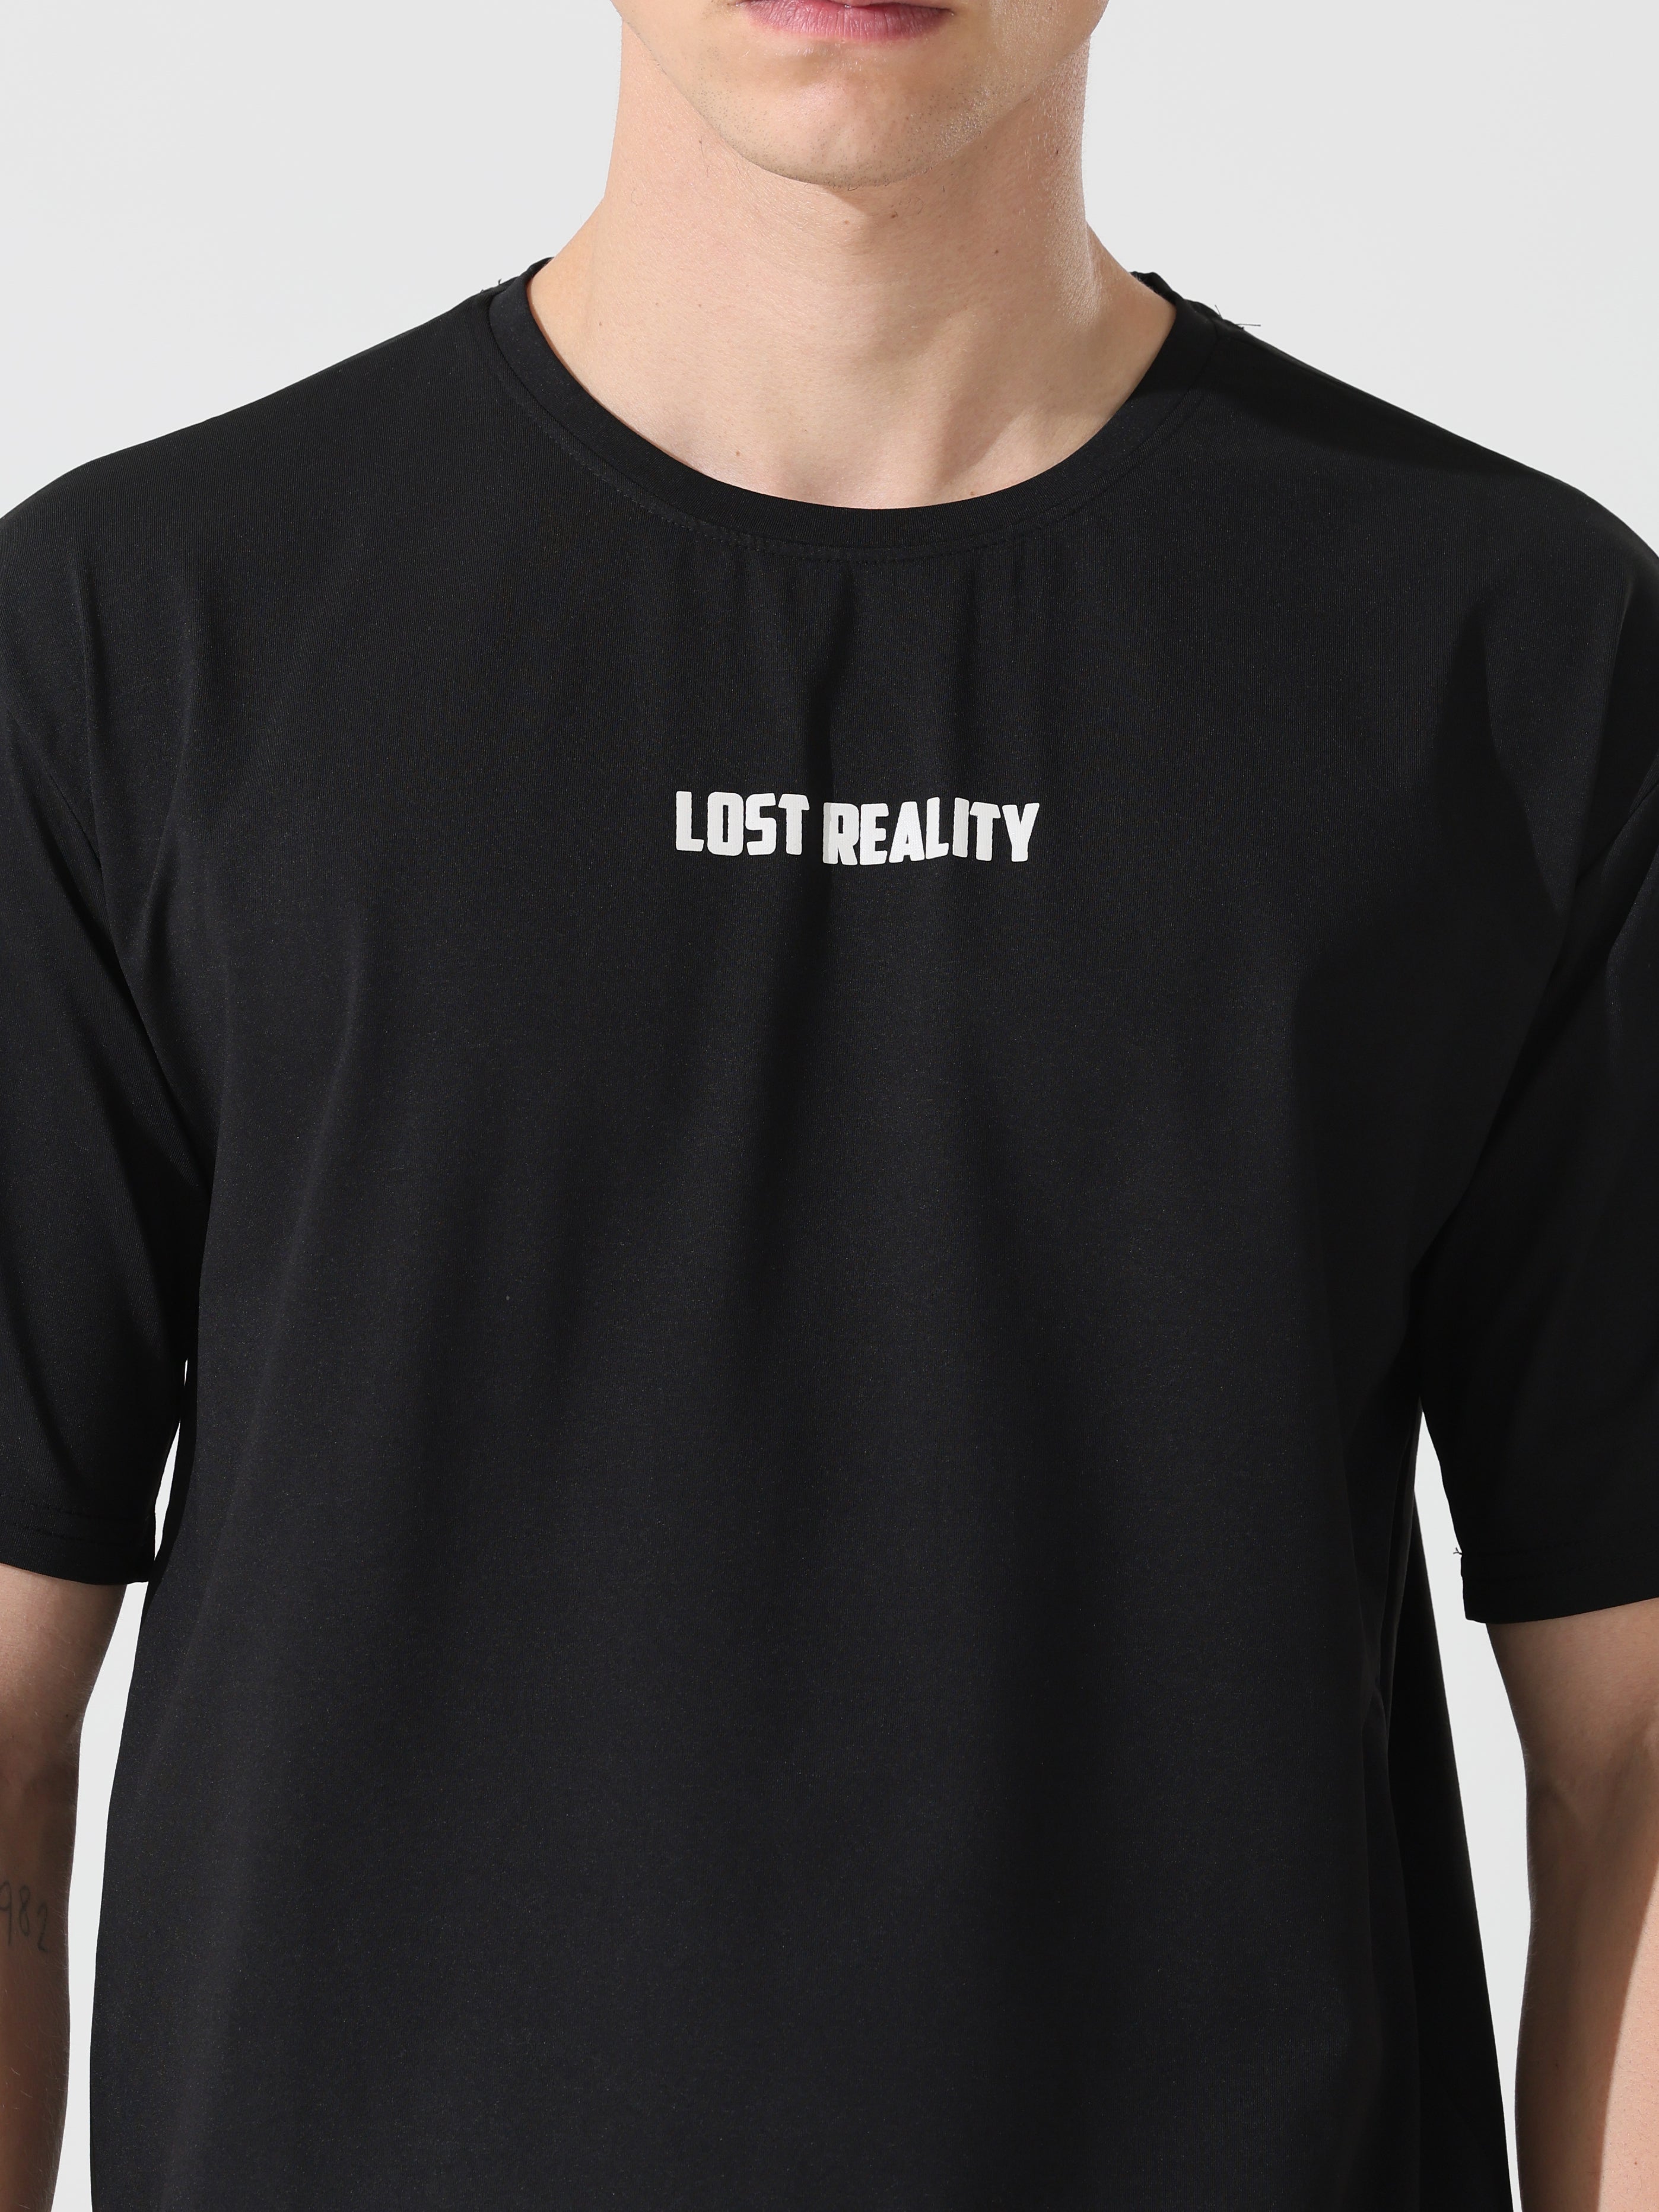 Lost reality Black half sleeve tee